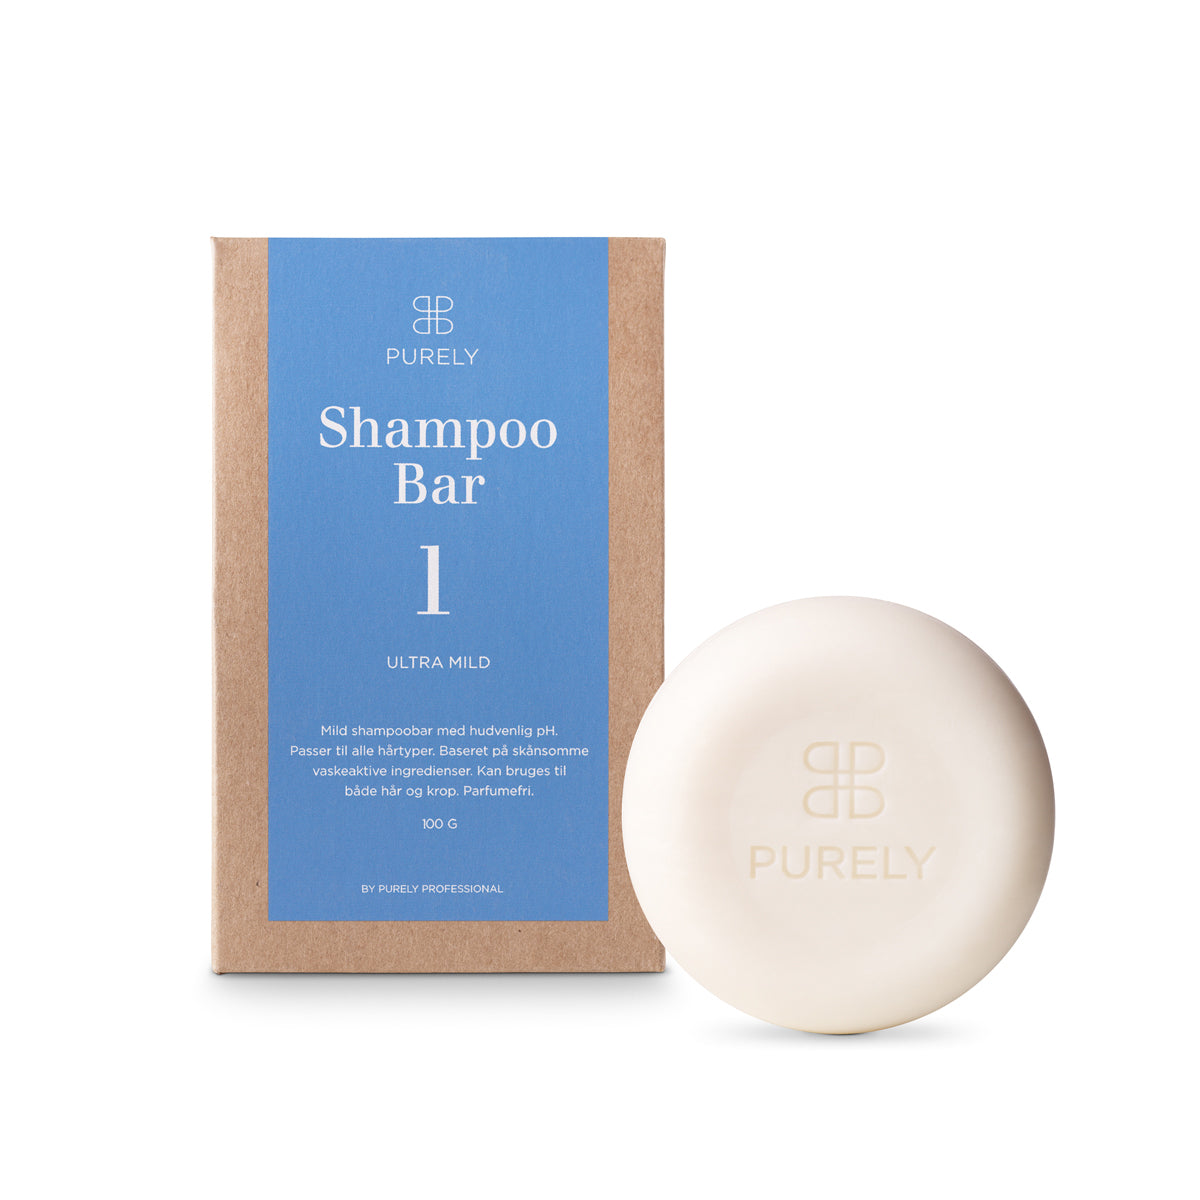 Shampoo Bar 1